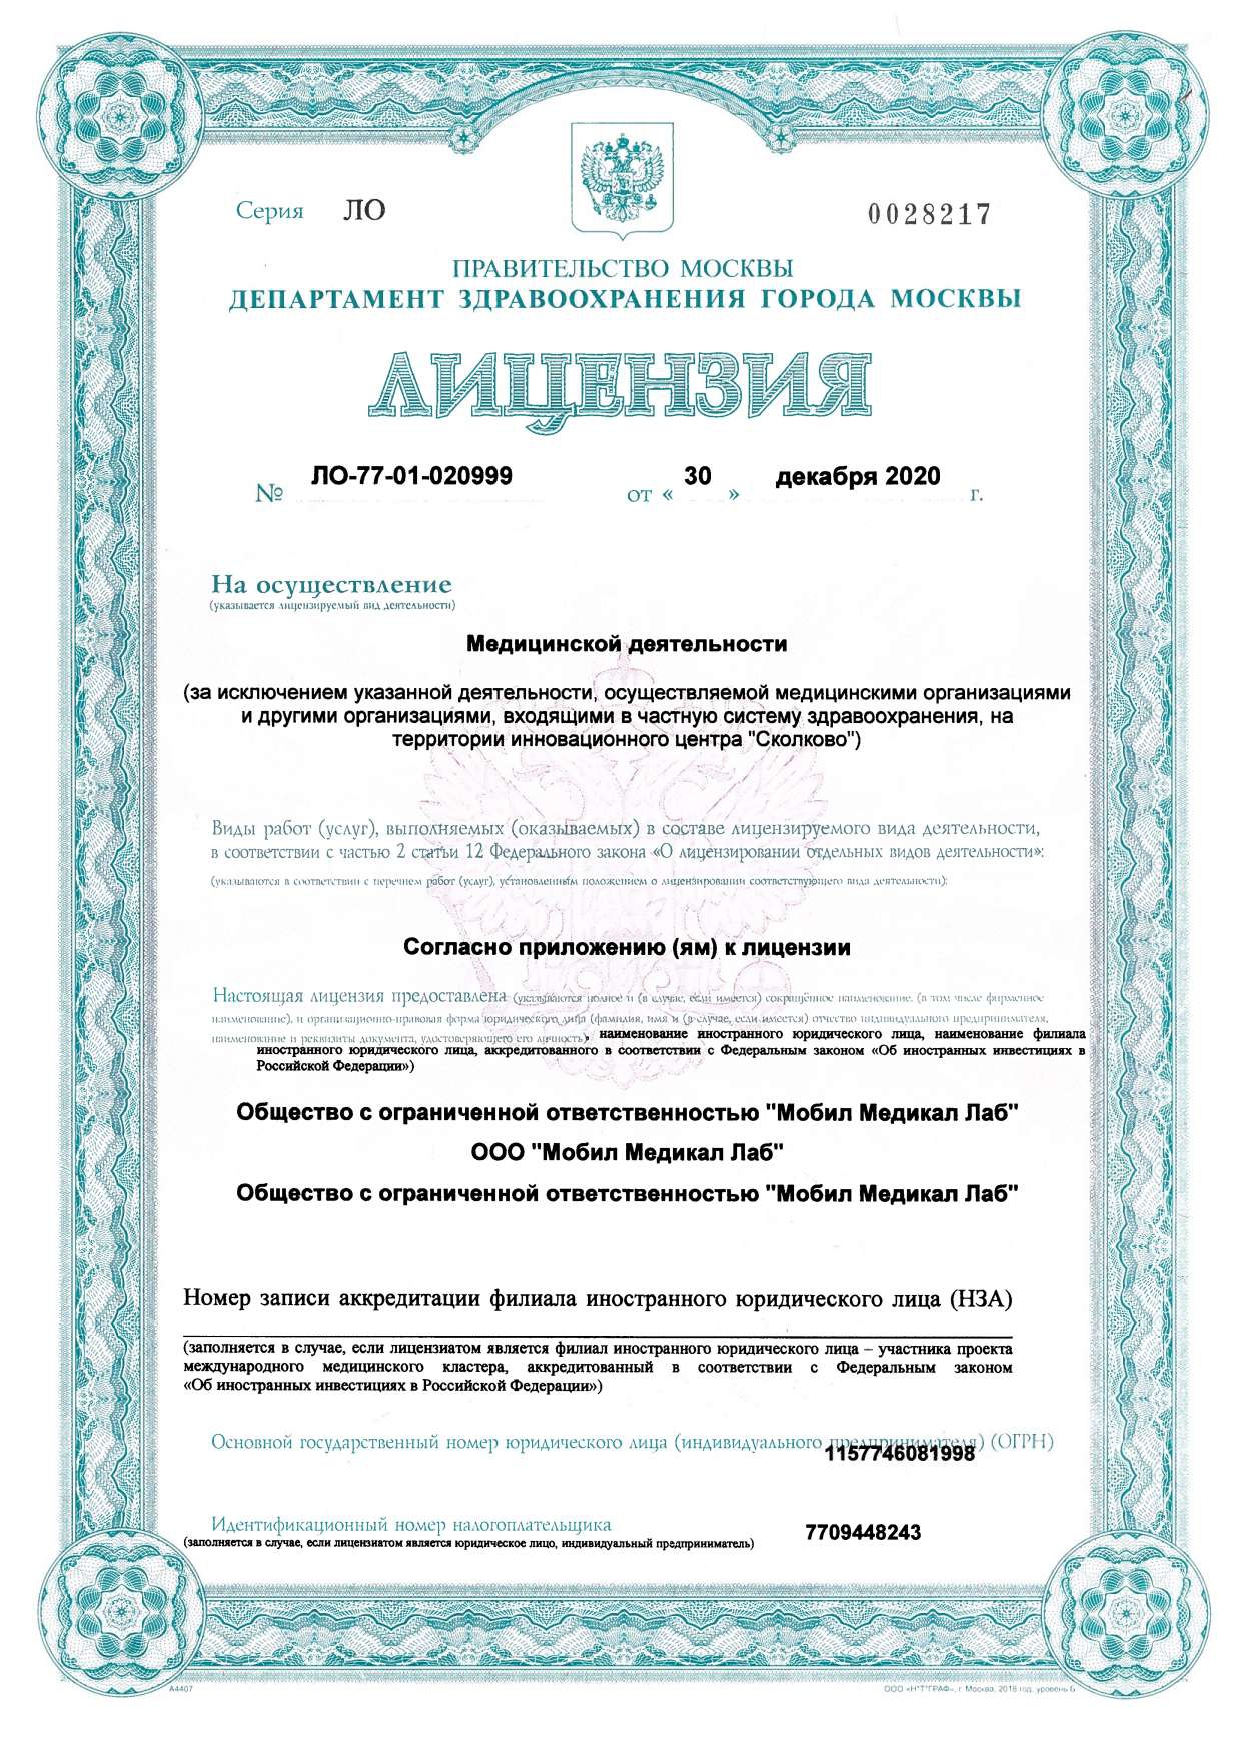 Лицензия лаборатории-партнера ЛО-77-01-020999 от 30.12.2020